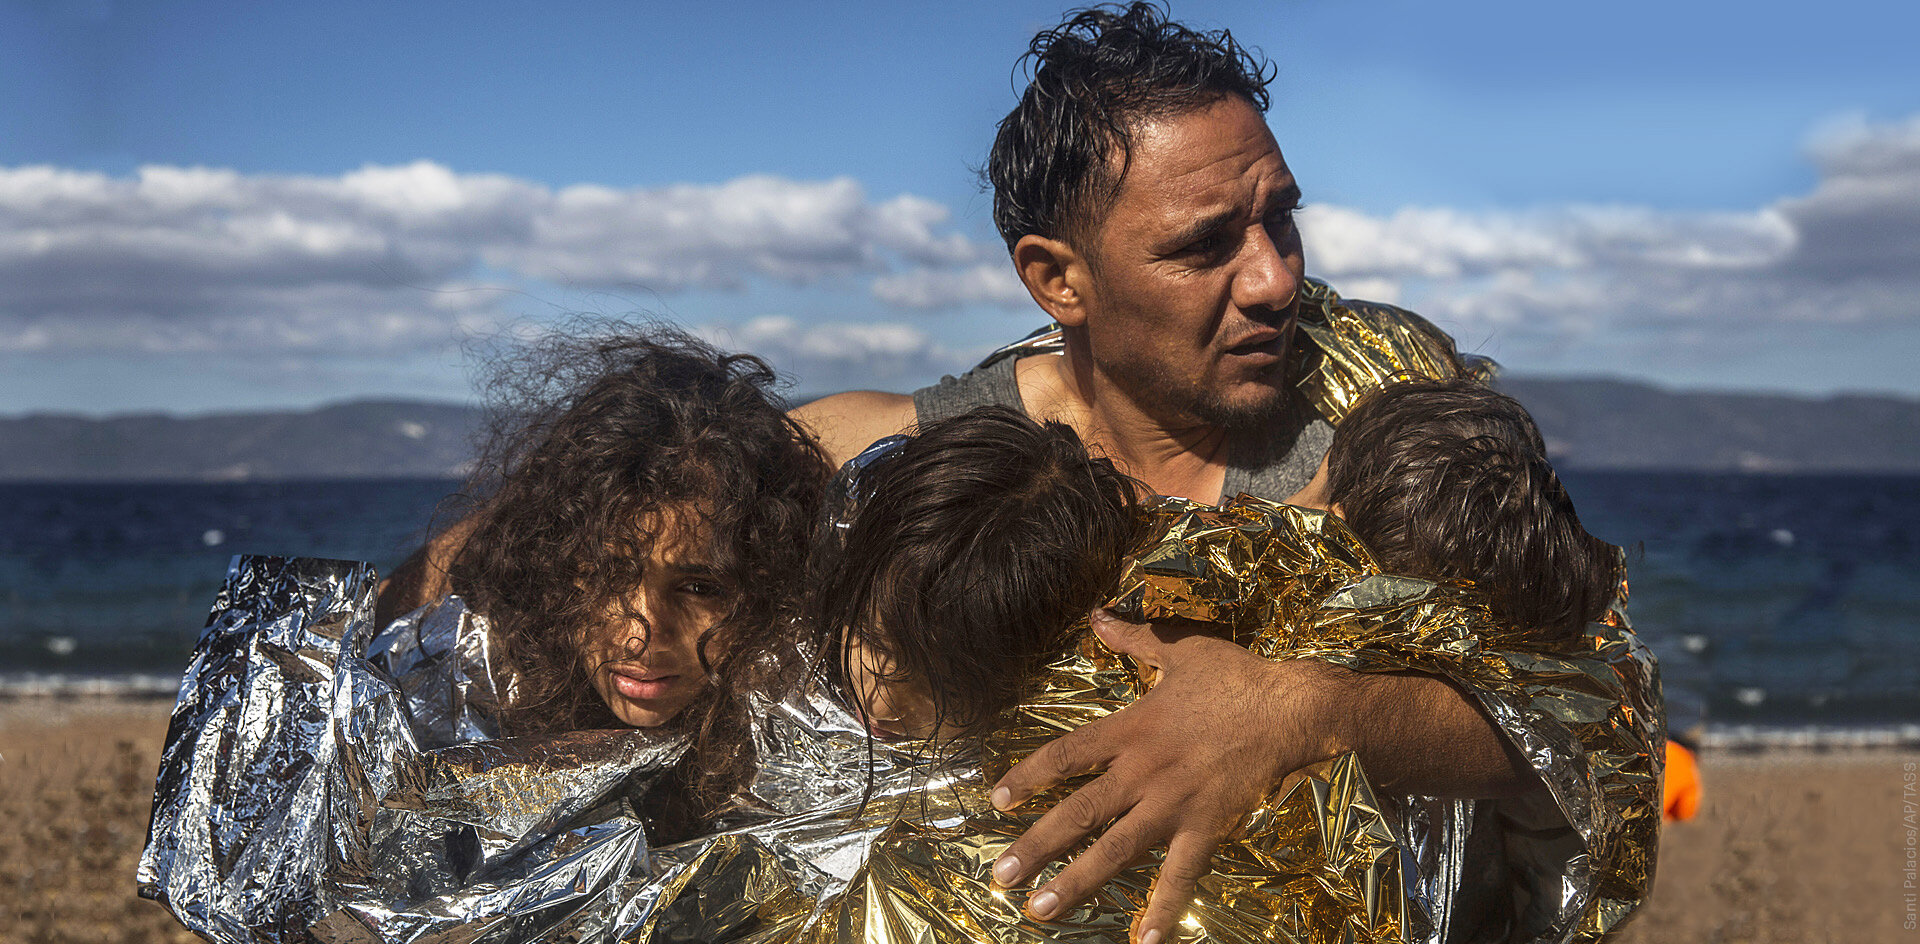 Италия борется с нелегальной миграцией через усиление контроля за «спасателями»